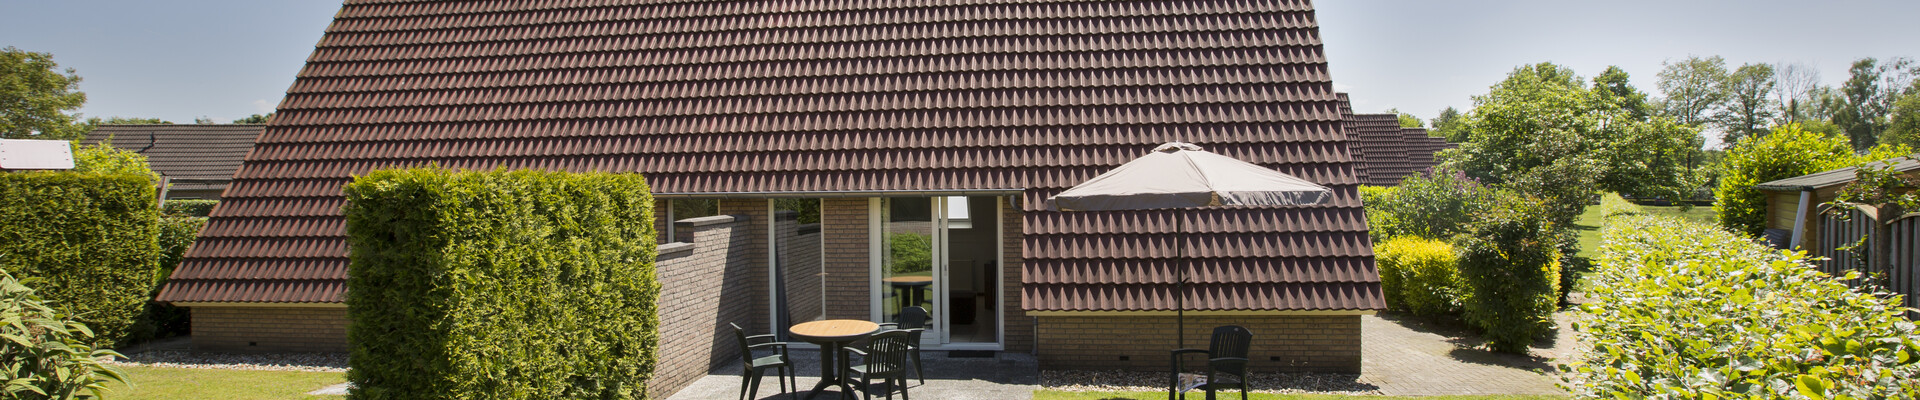 Huisjes 2-4-persoons, vakantiepark Molendal, geschakeld - kleine woonkamer